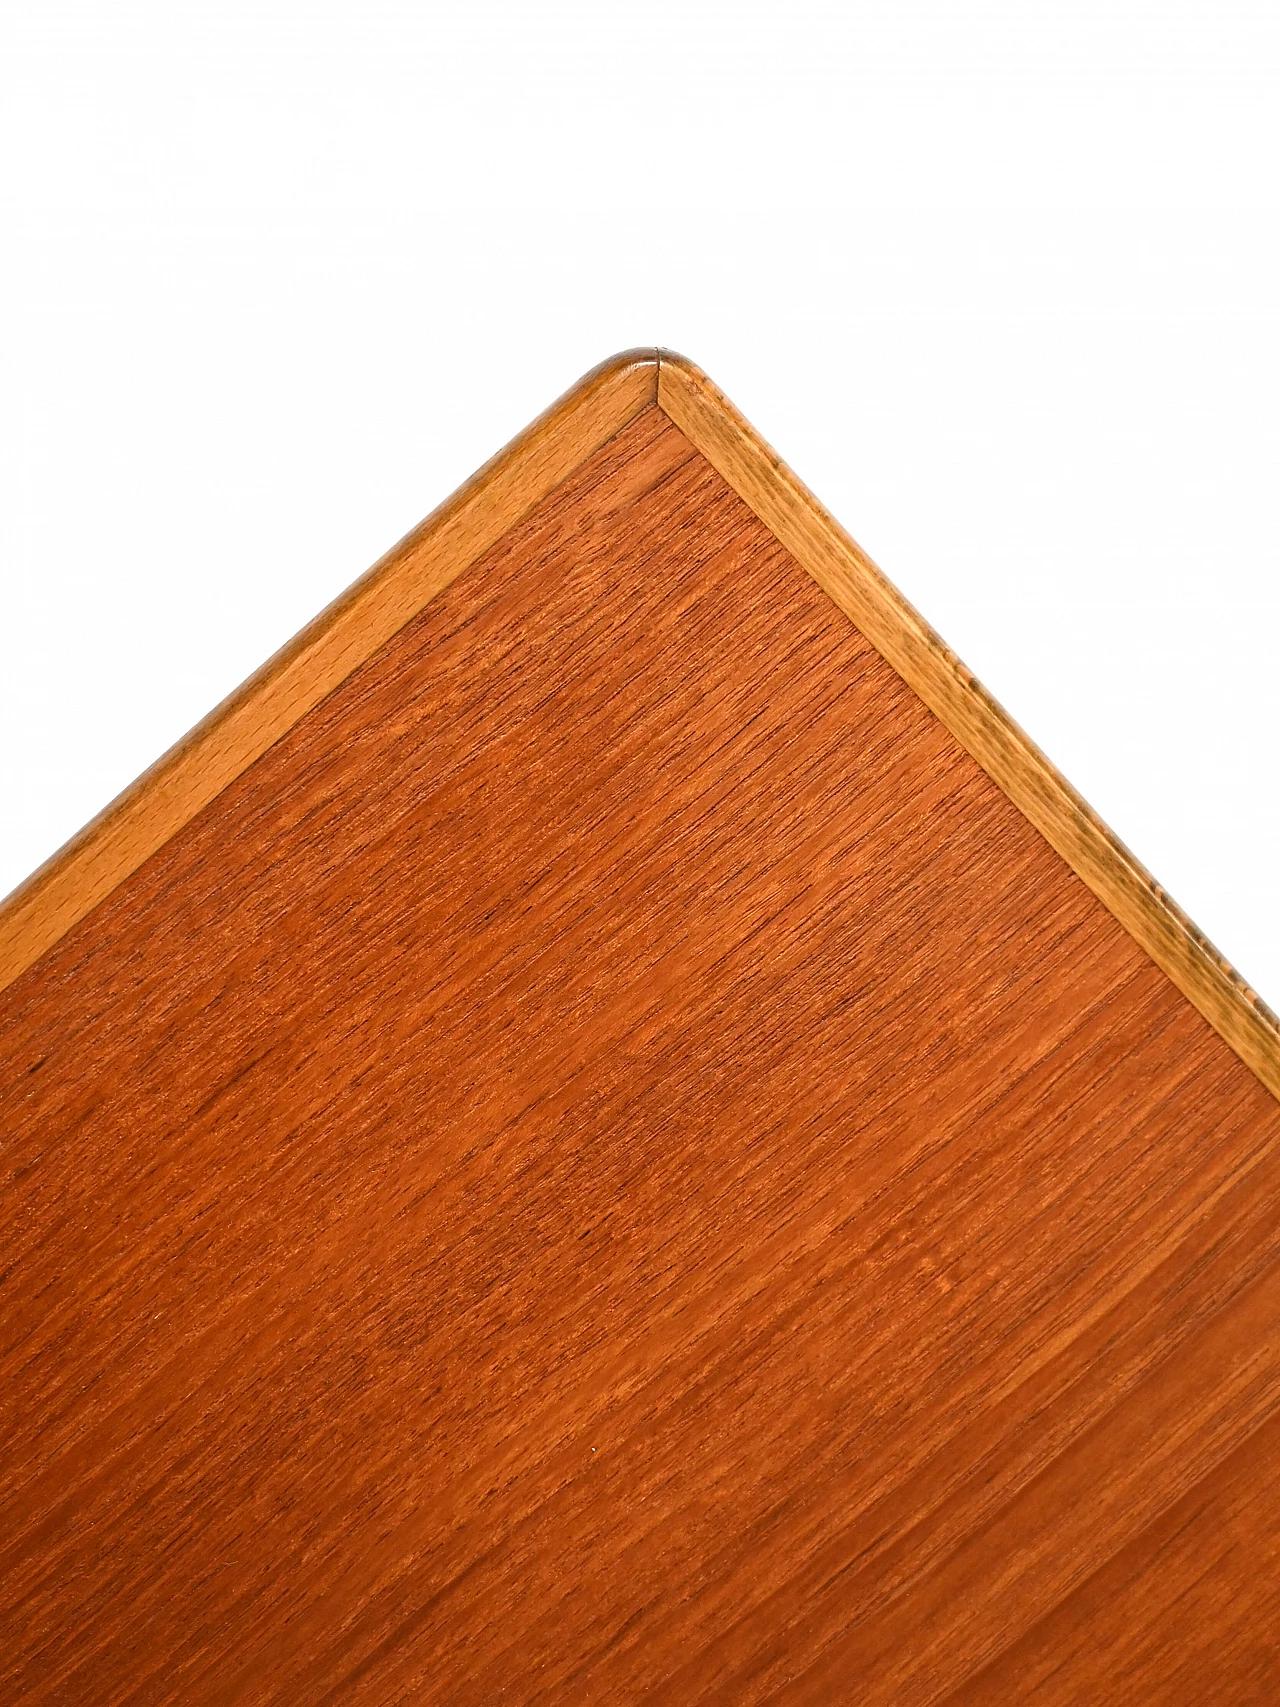 Slagbord teak extending table, 1960s 1447654